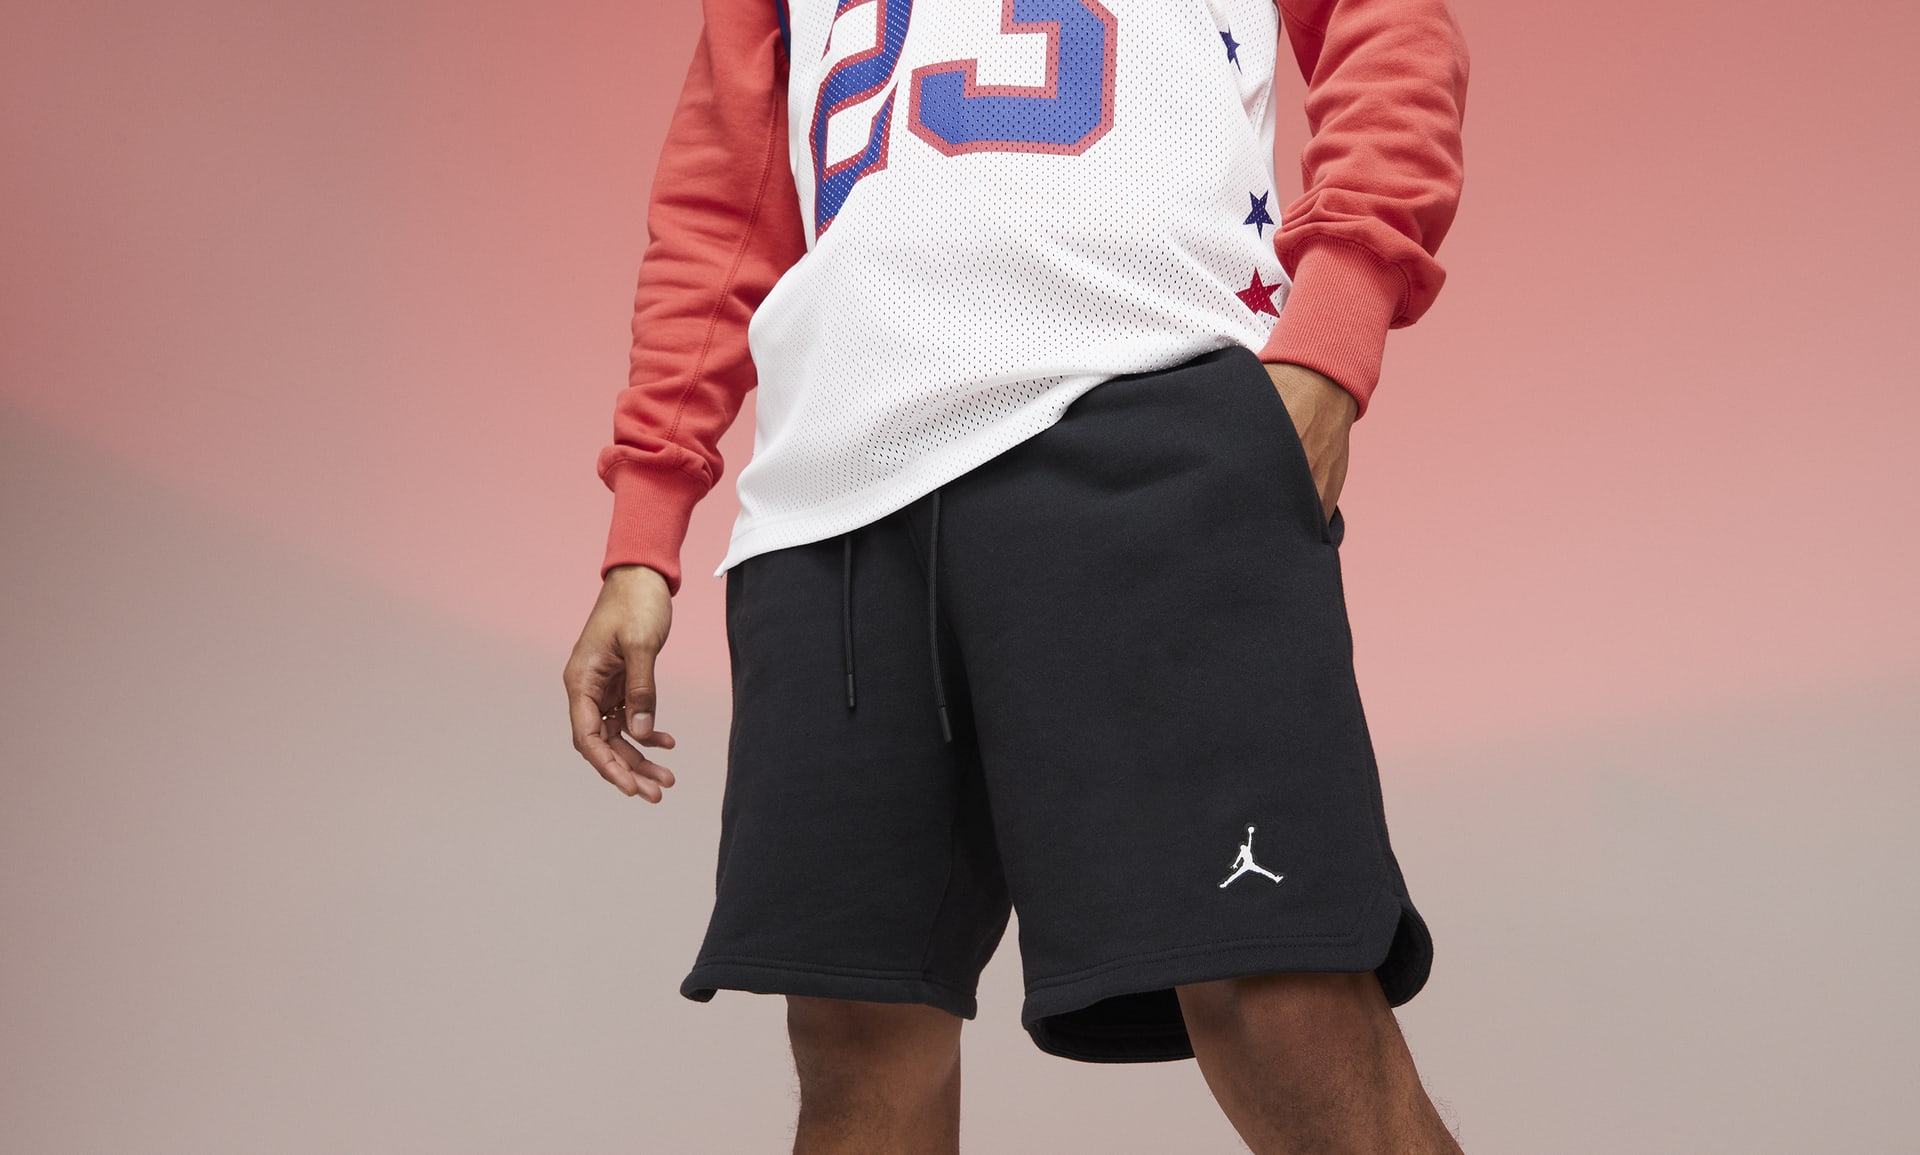 Jordan Essentials Men's Fleece Shorts. Nike.com